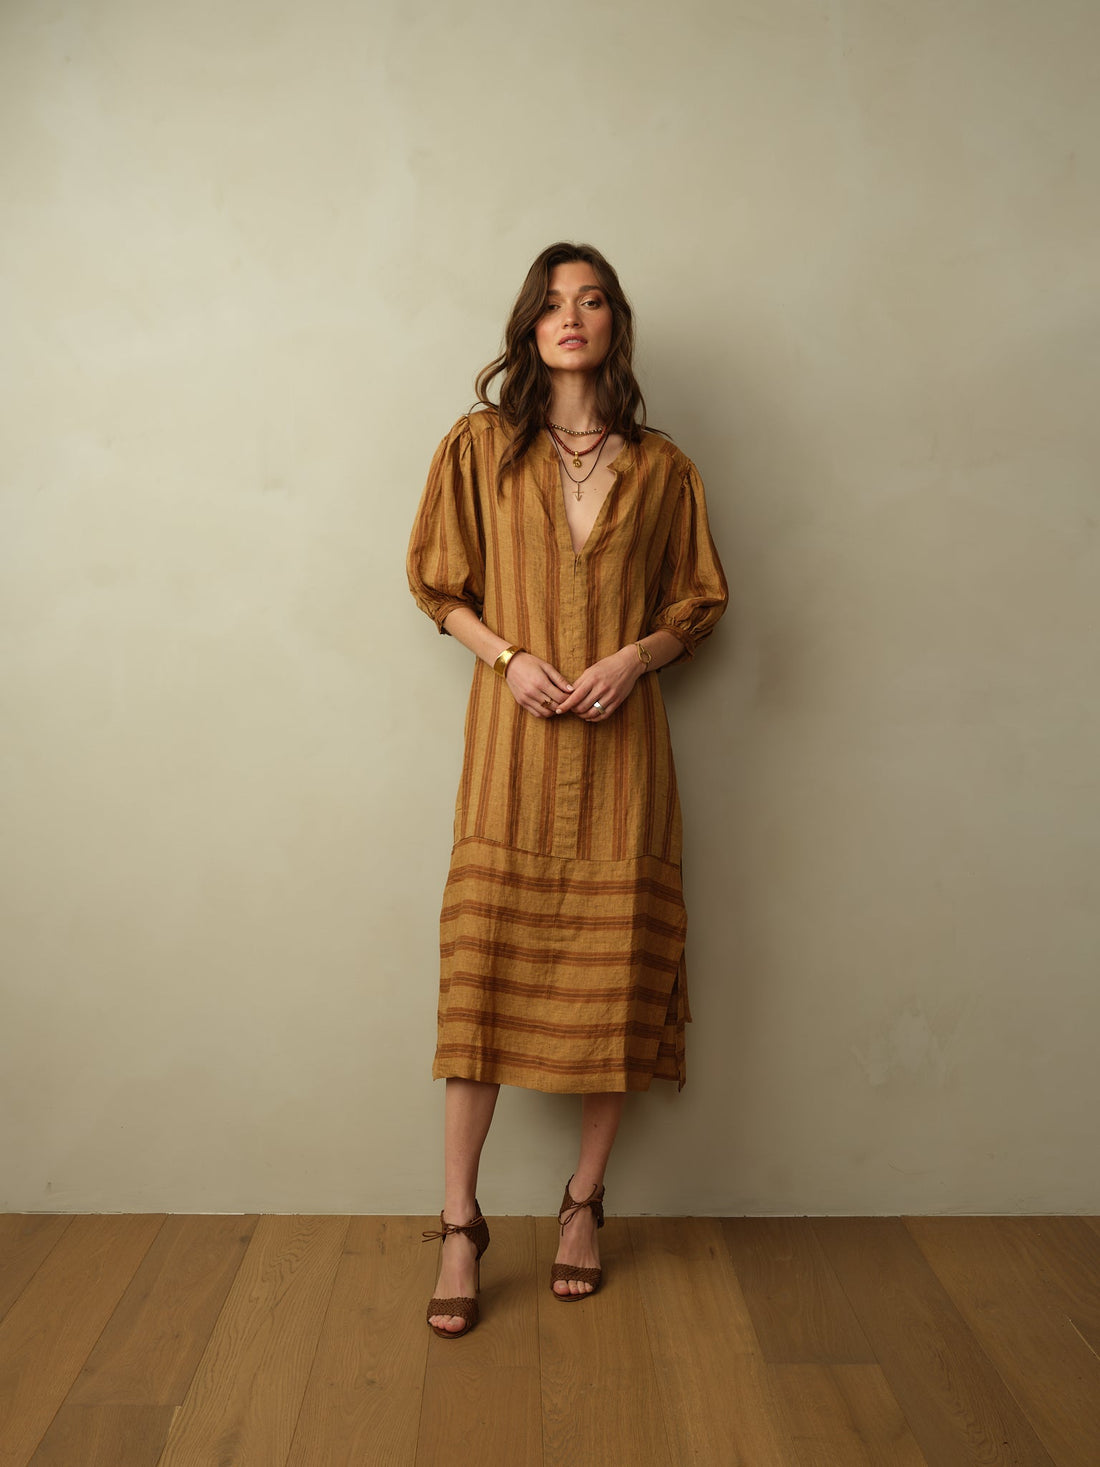 Women's Marrakech Linen Dress